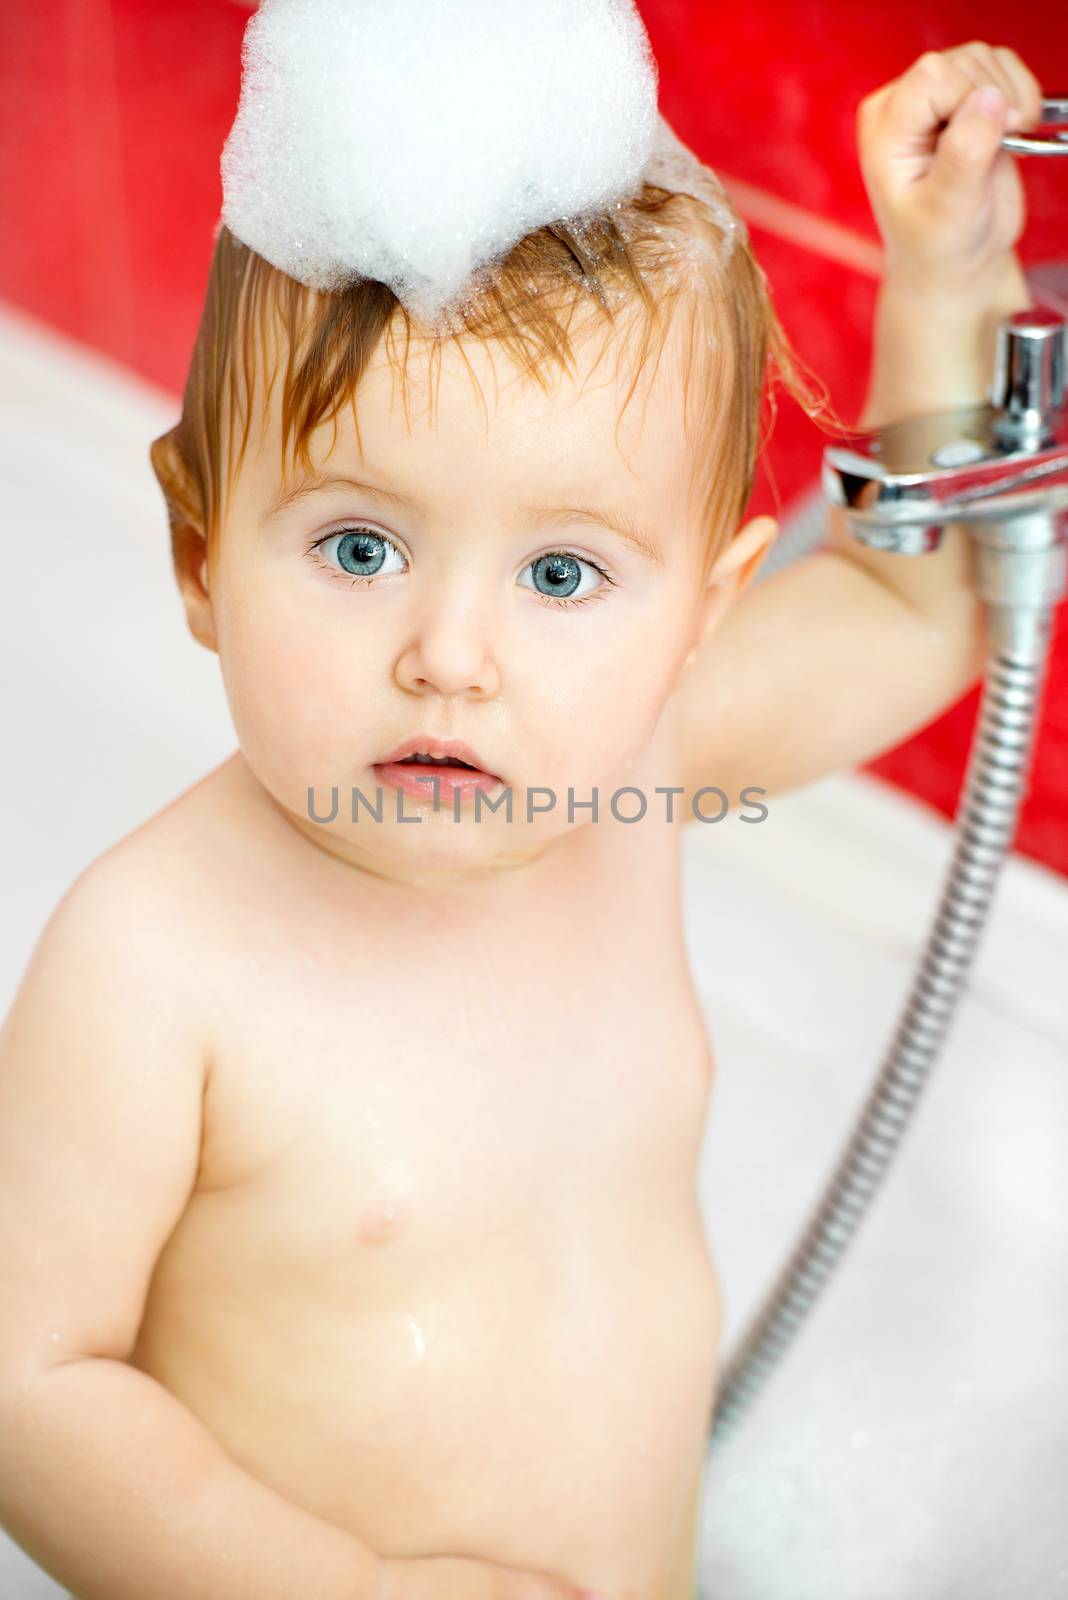 baby in bath by GekaSkr